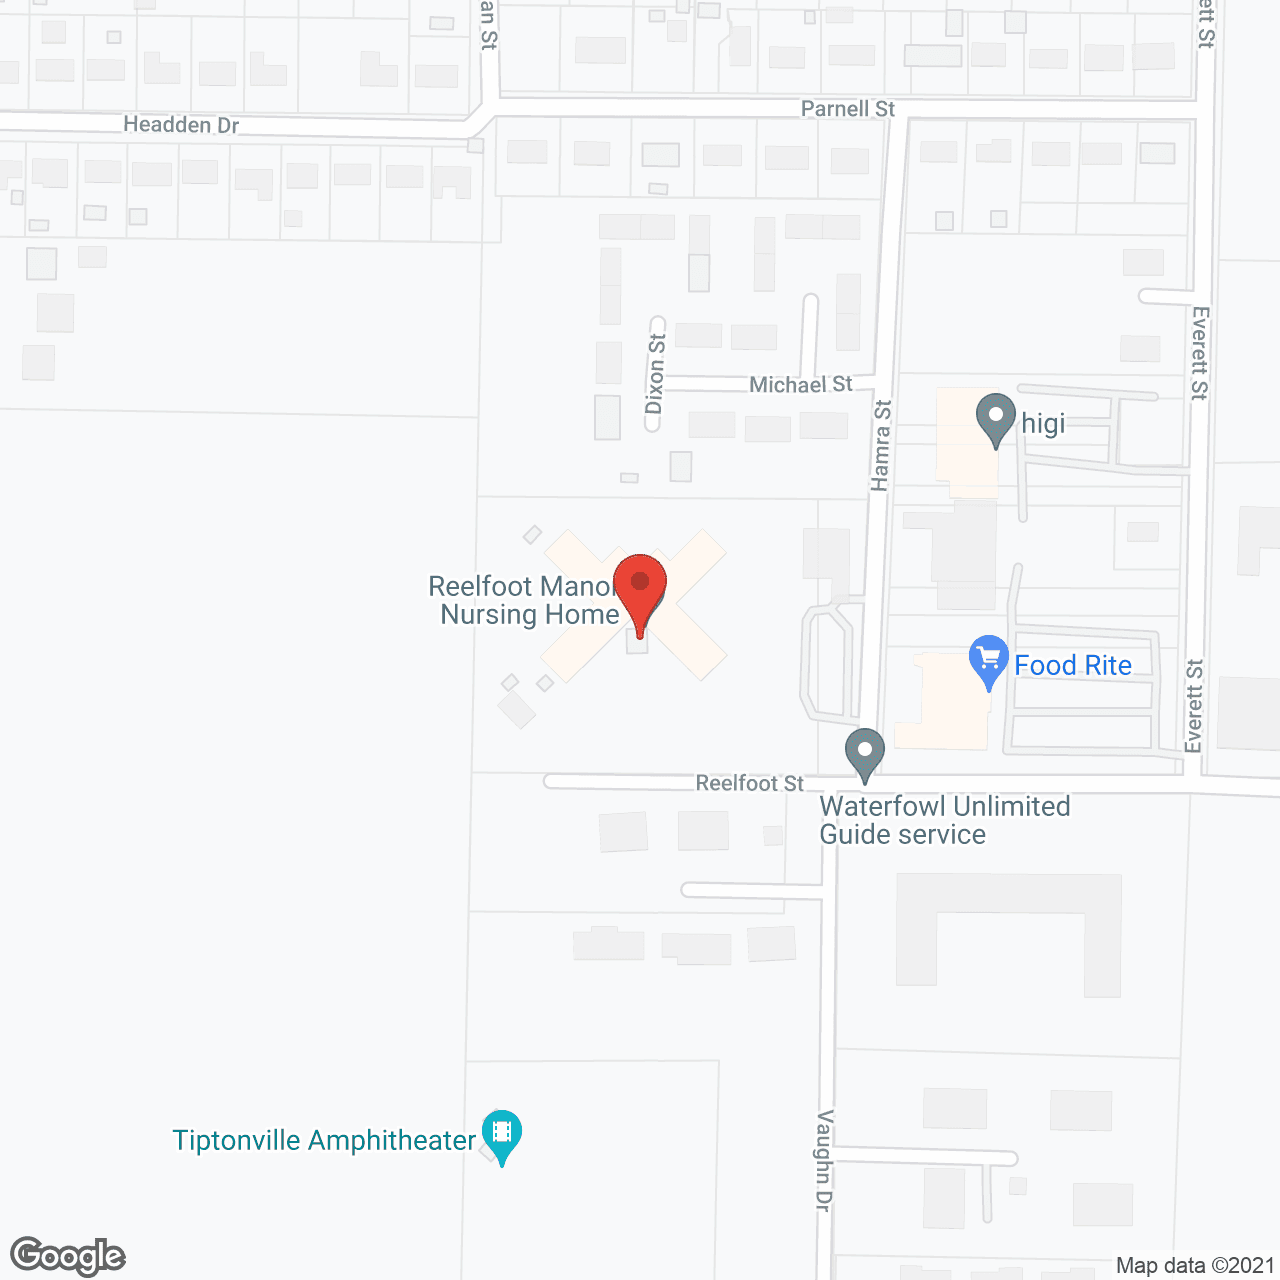 Reelfoot Manor Nursing Home in google map